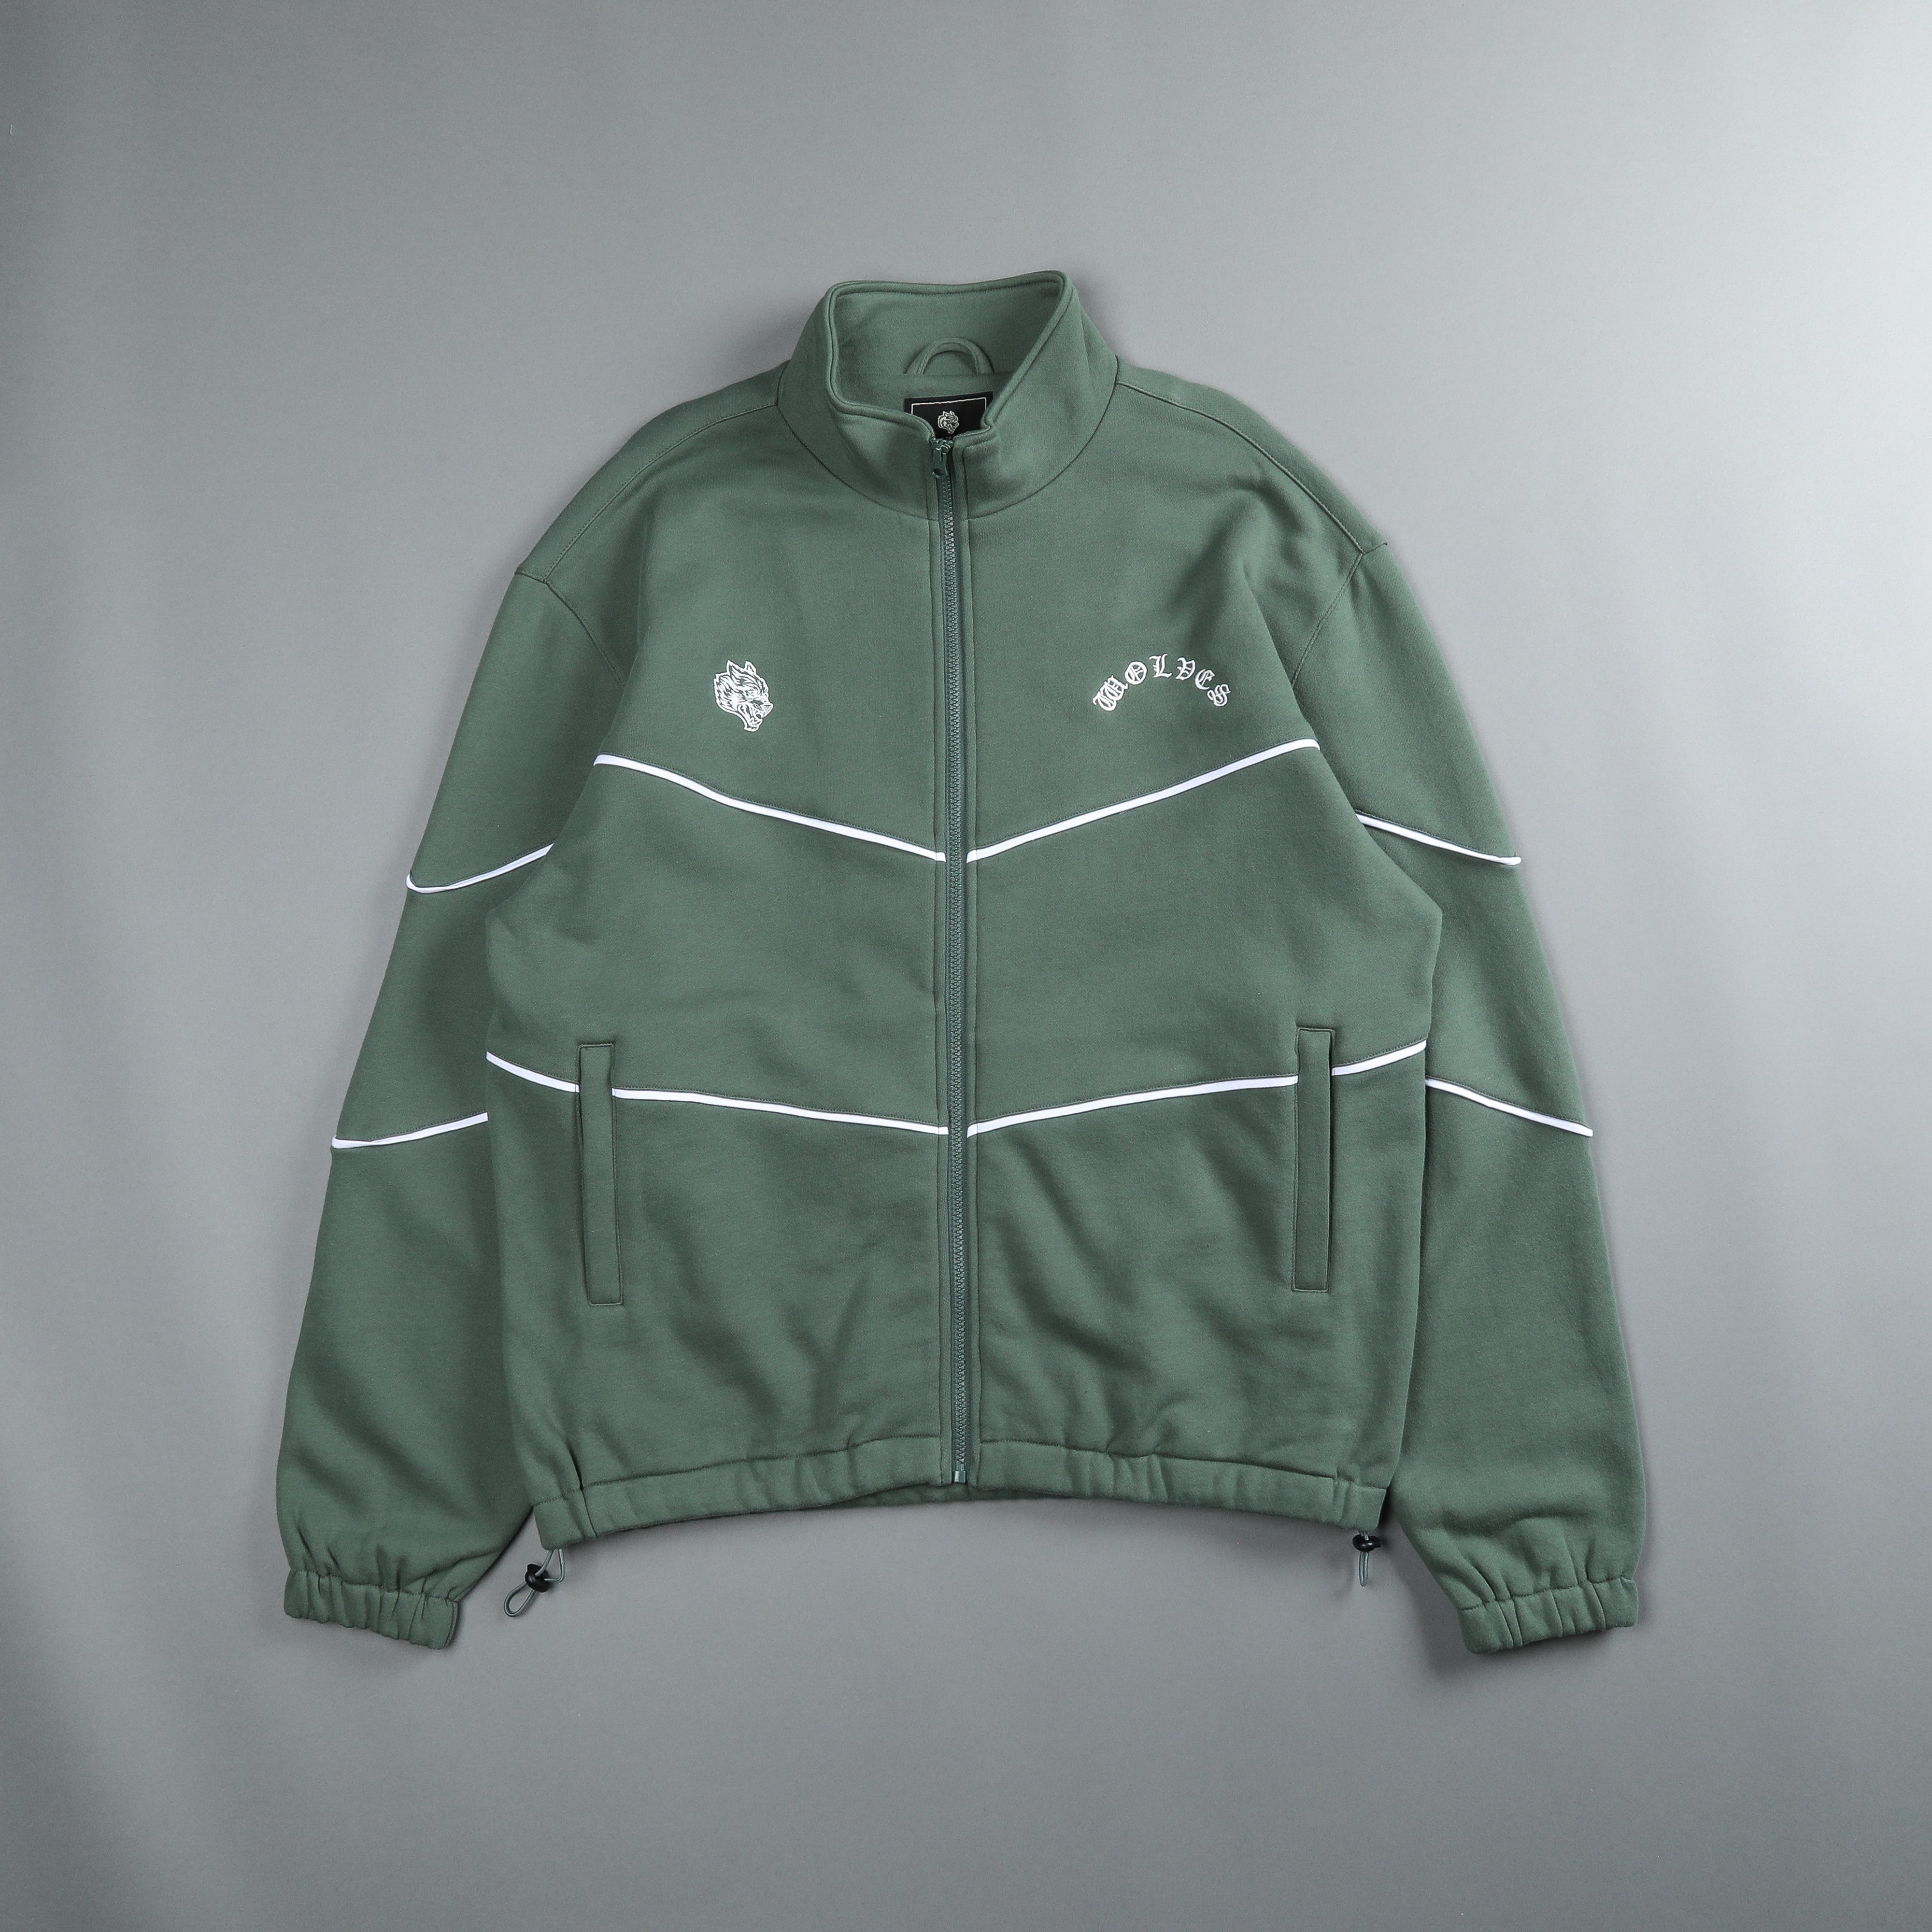 Jackets & Outerwear – DarcSport